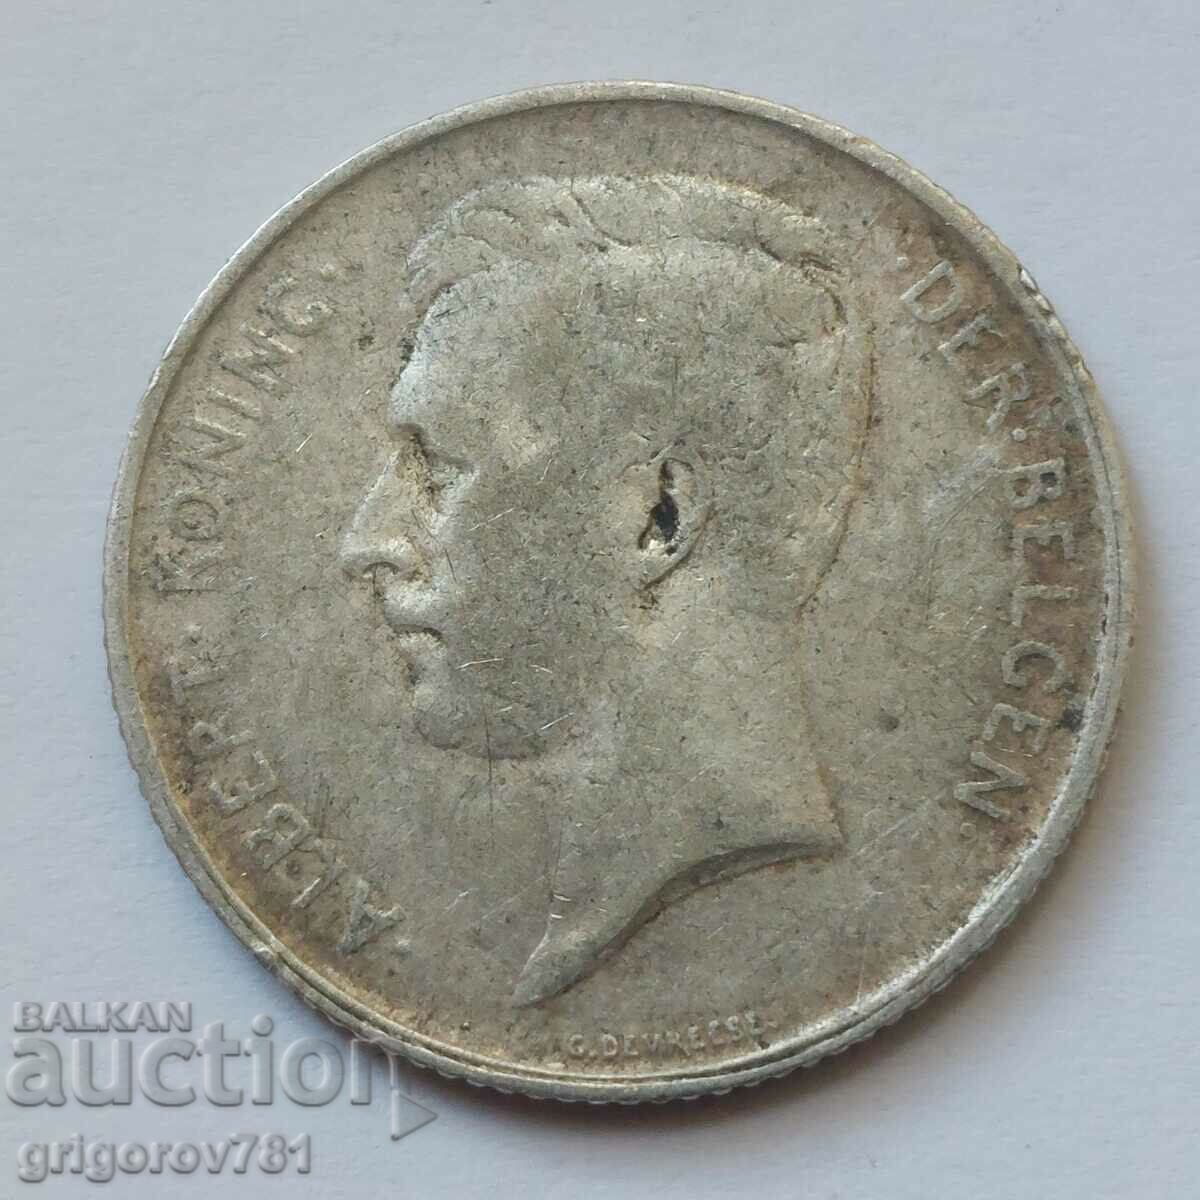 1 franc silver Belgium 1912 - silver coin #65